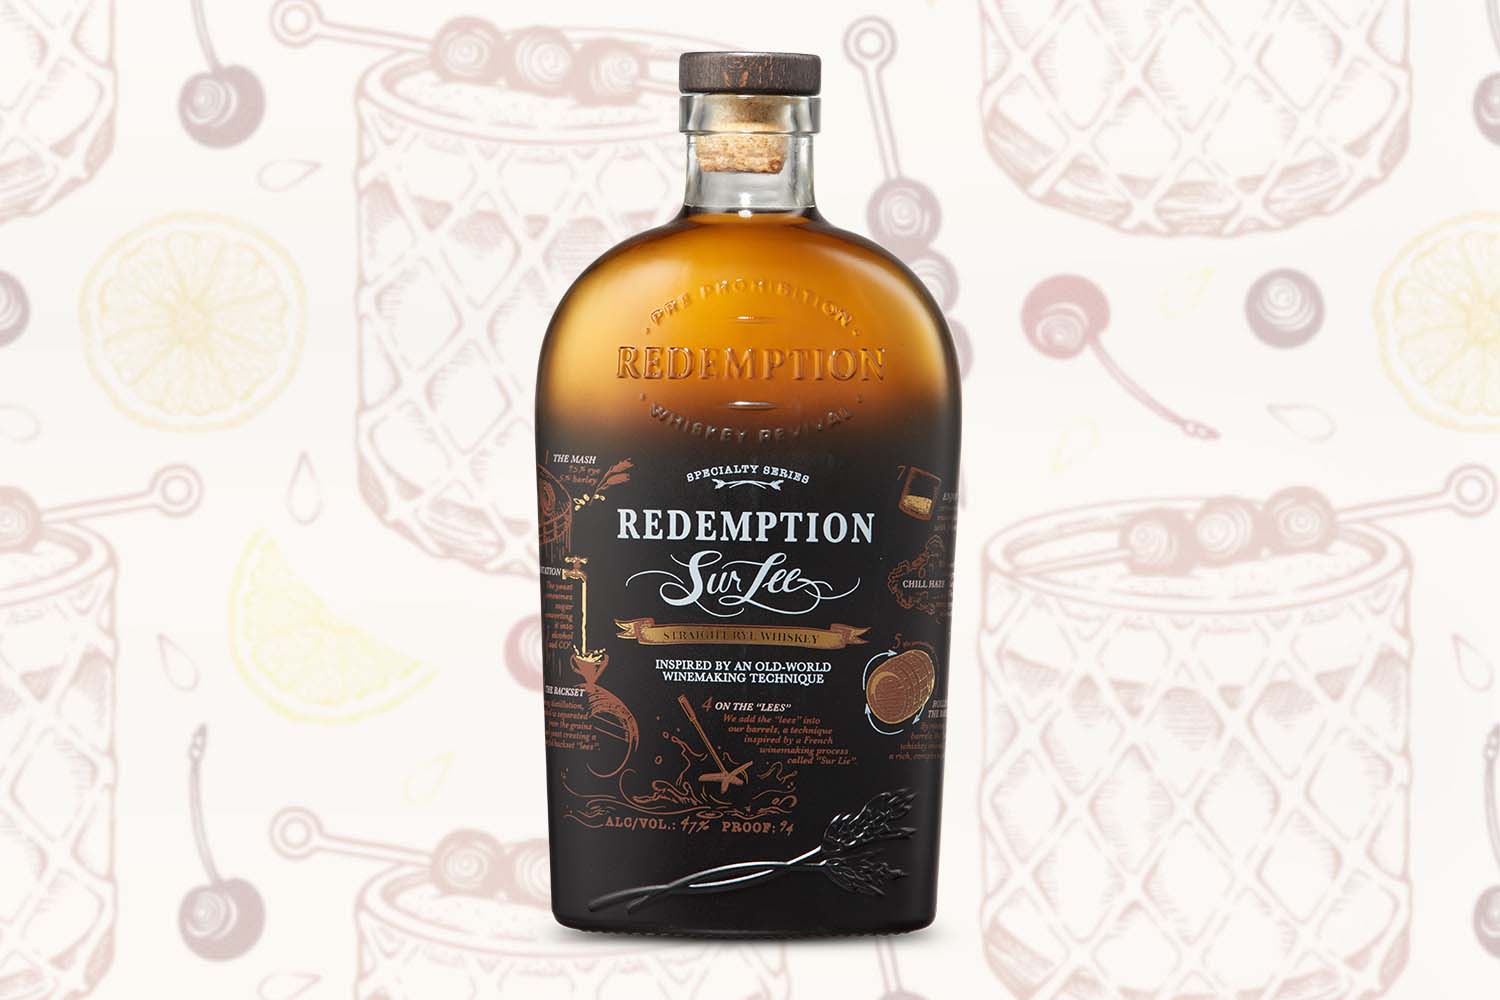 Redemption Sur Lee Straight Rye Whiskey